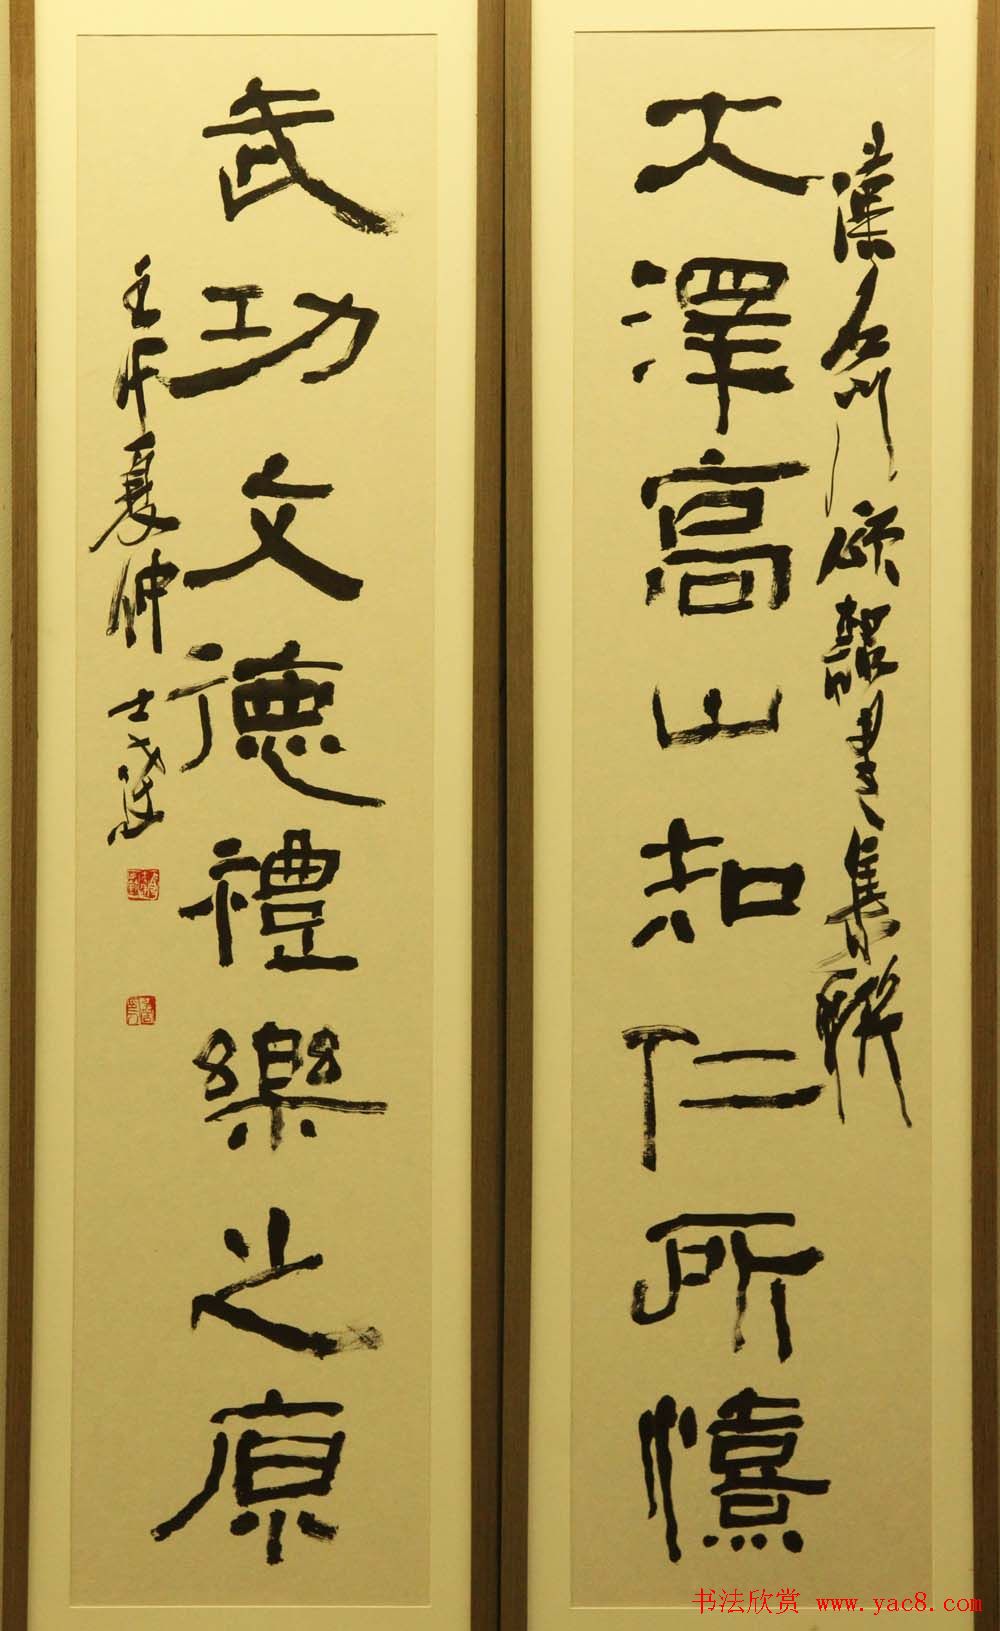 江苏美术馆马士达书法篆刻展作品欣赏